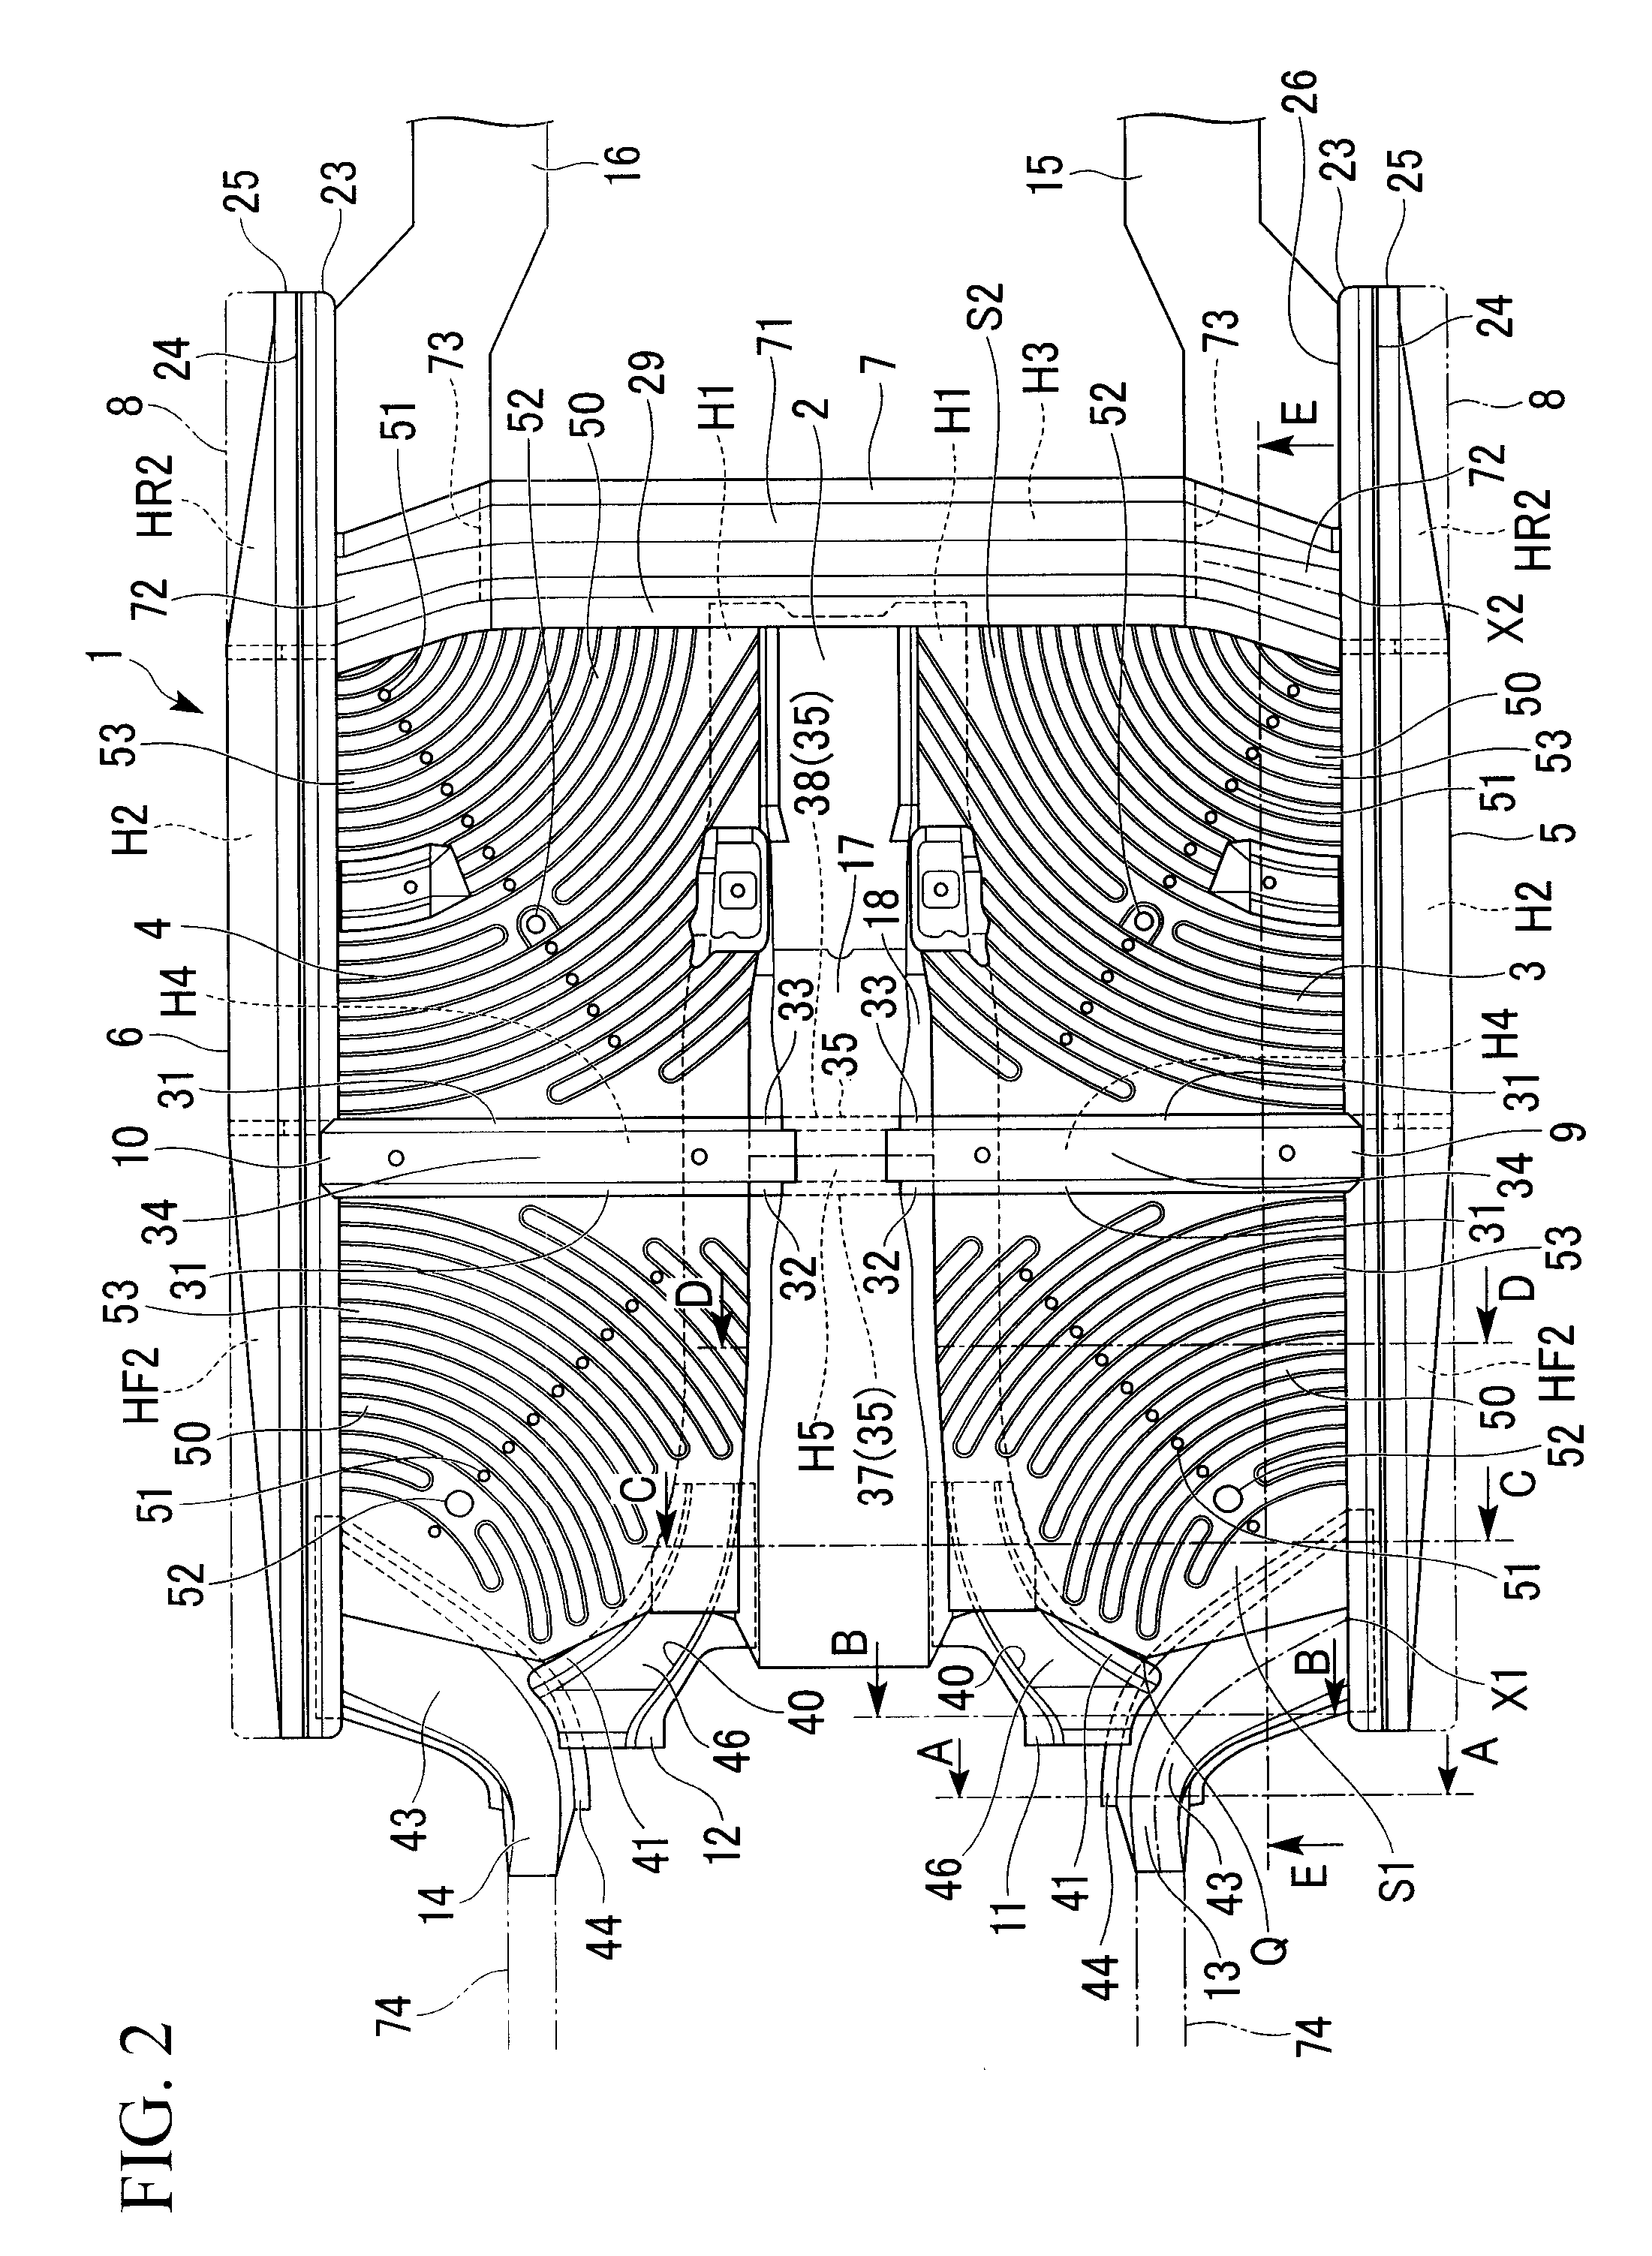 Vehicle floor structure